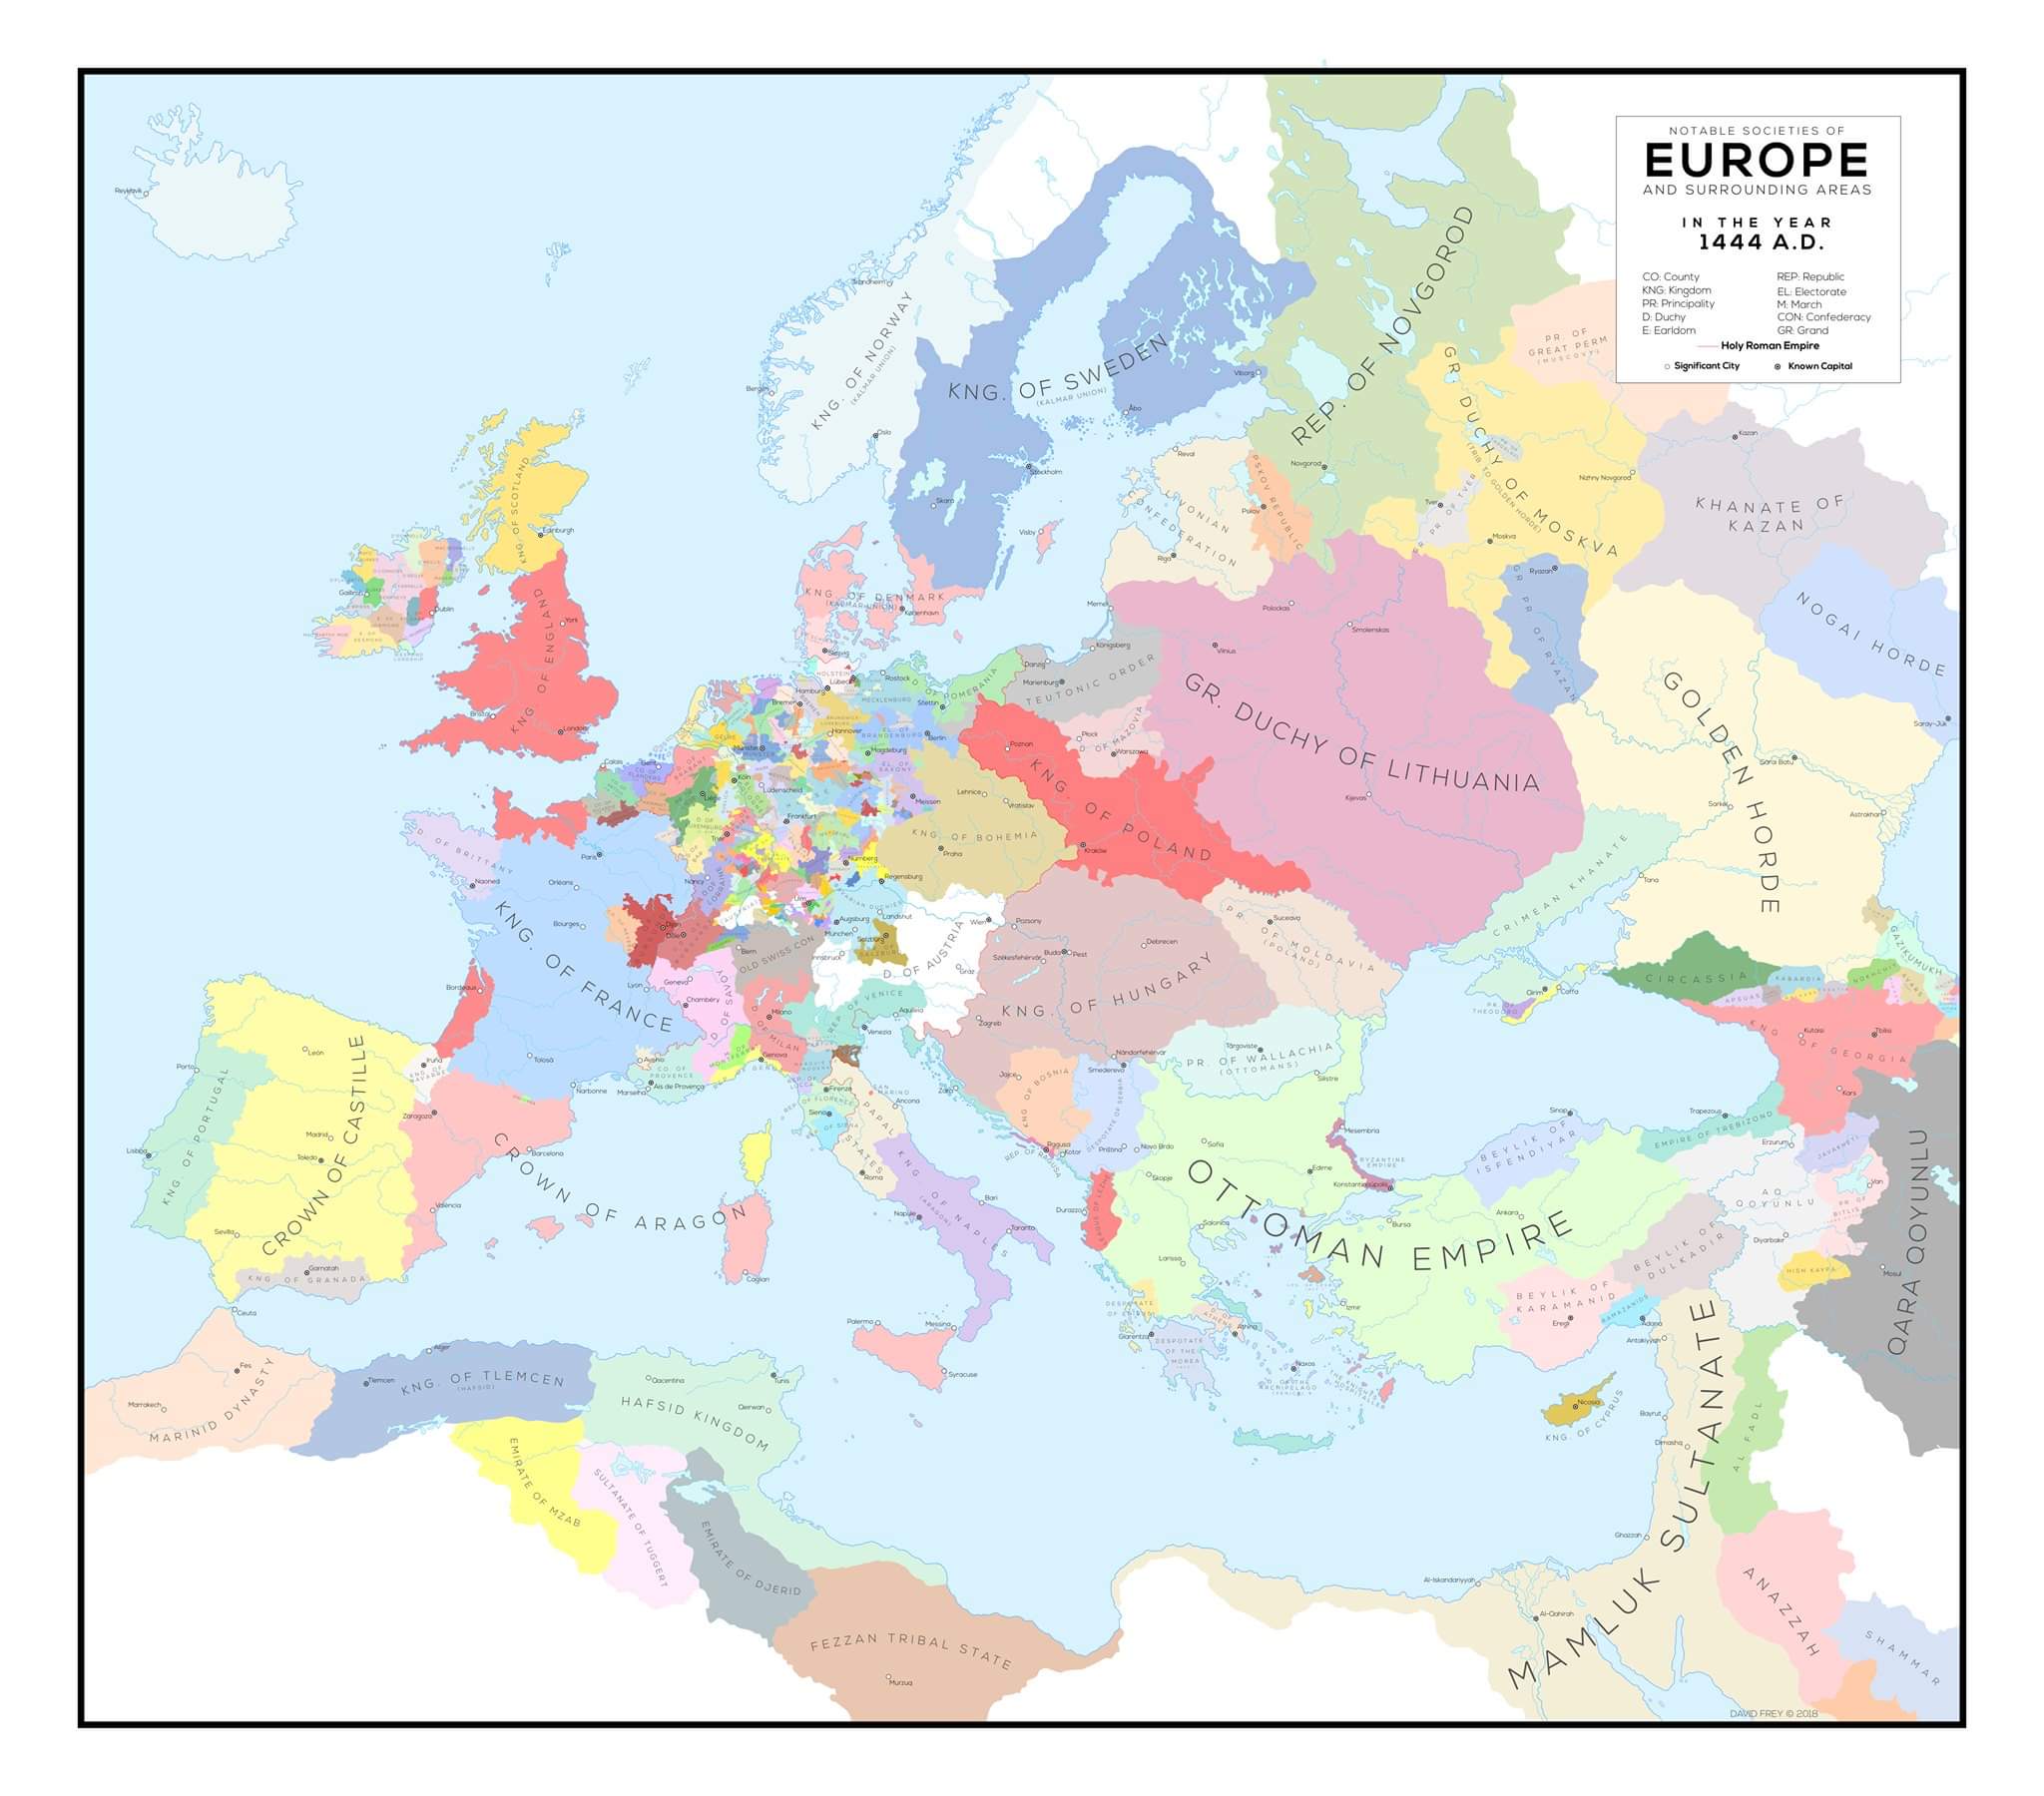 Obrázek Europe 1444